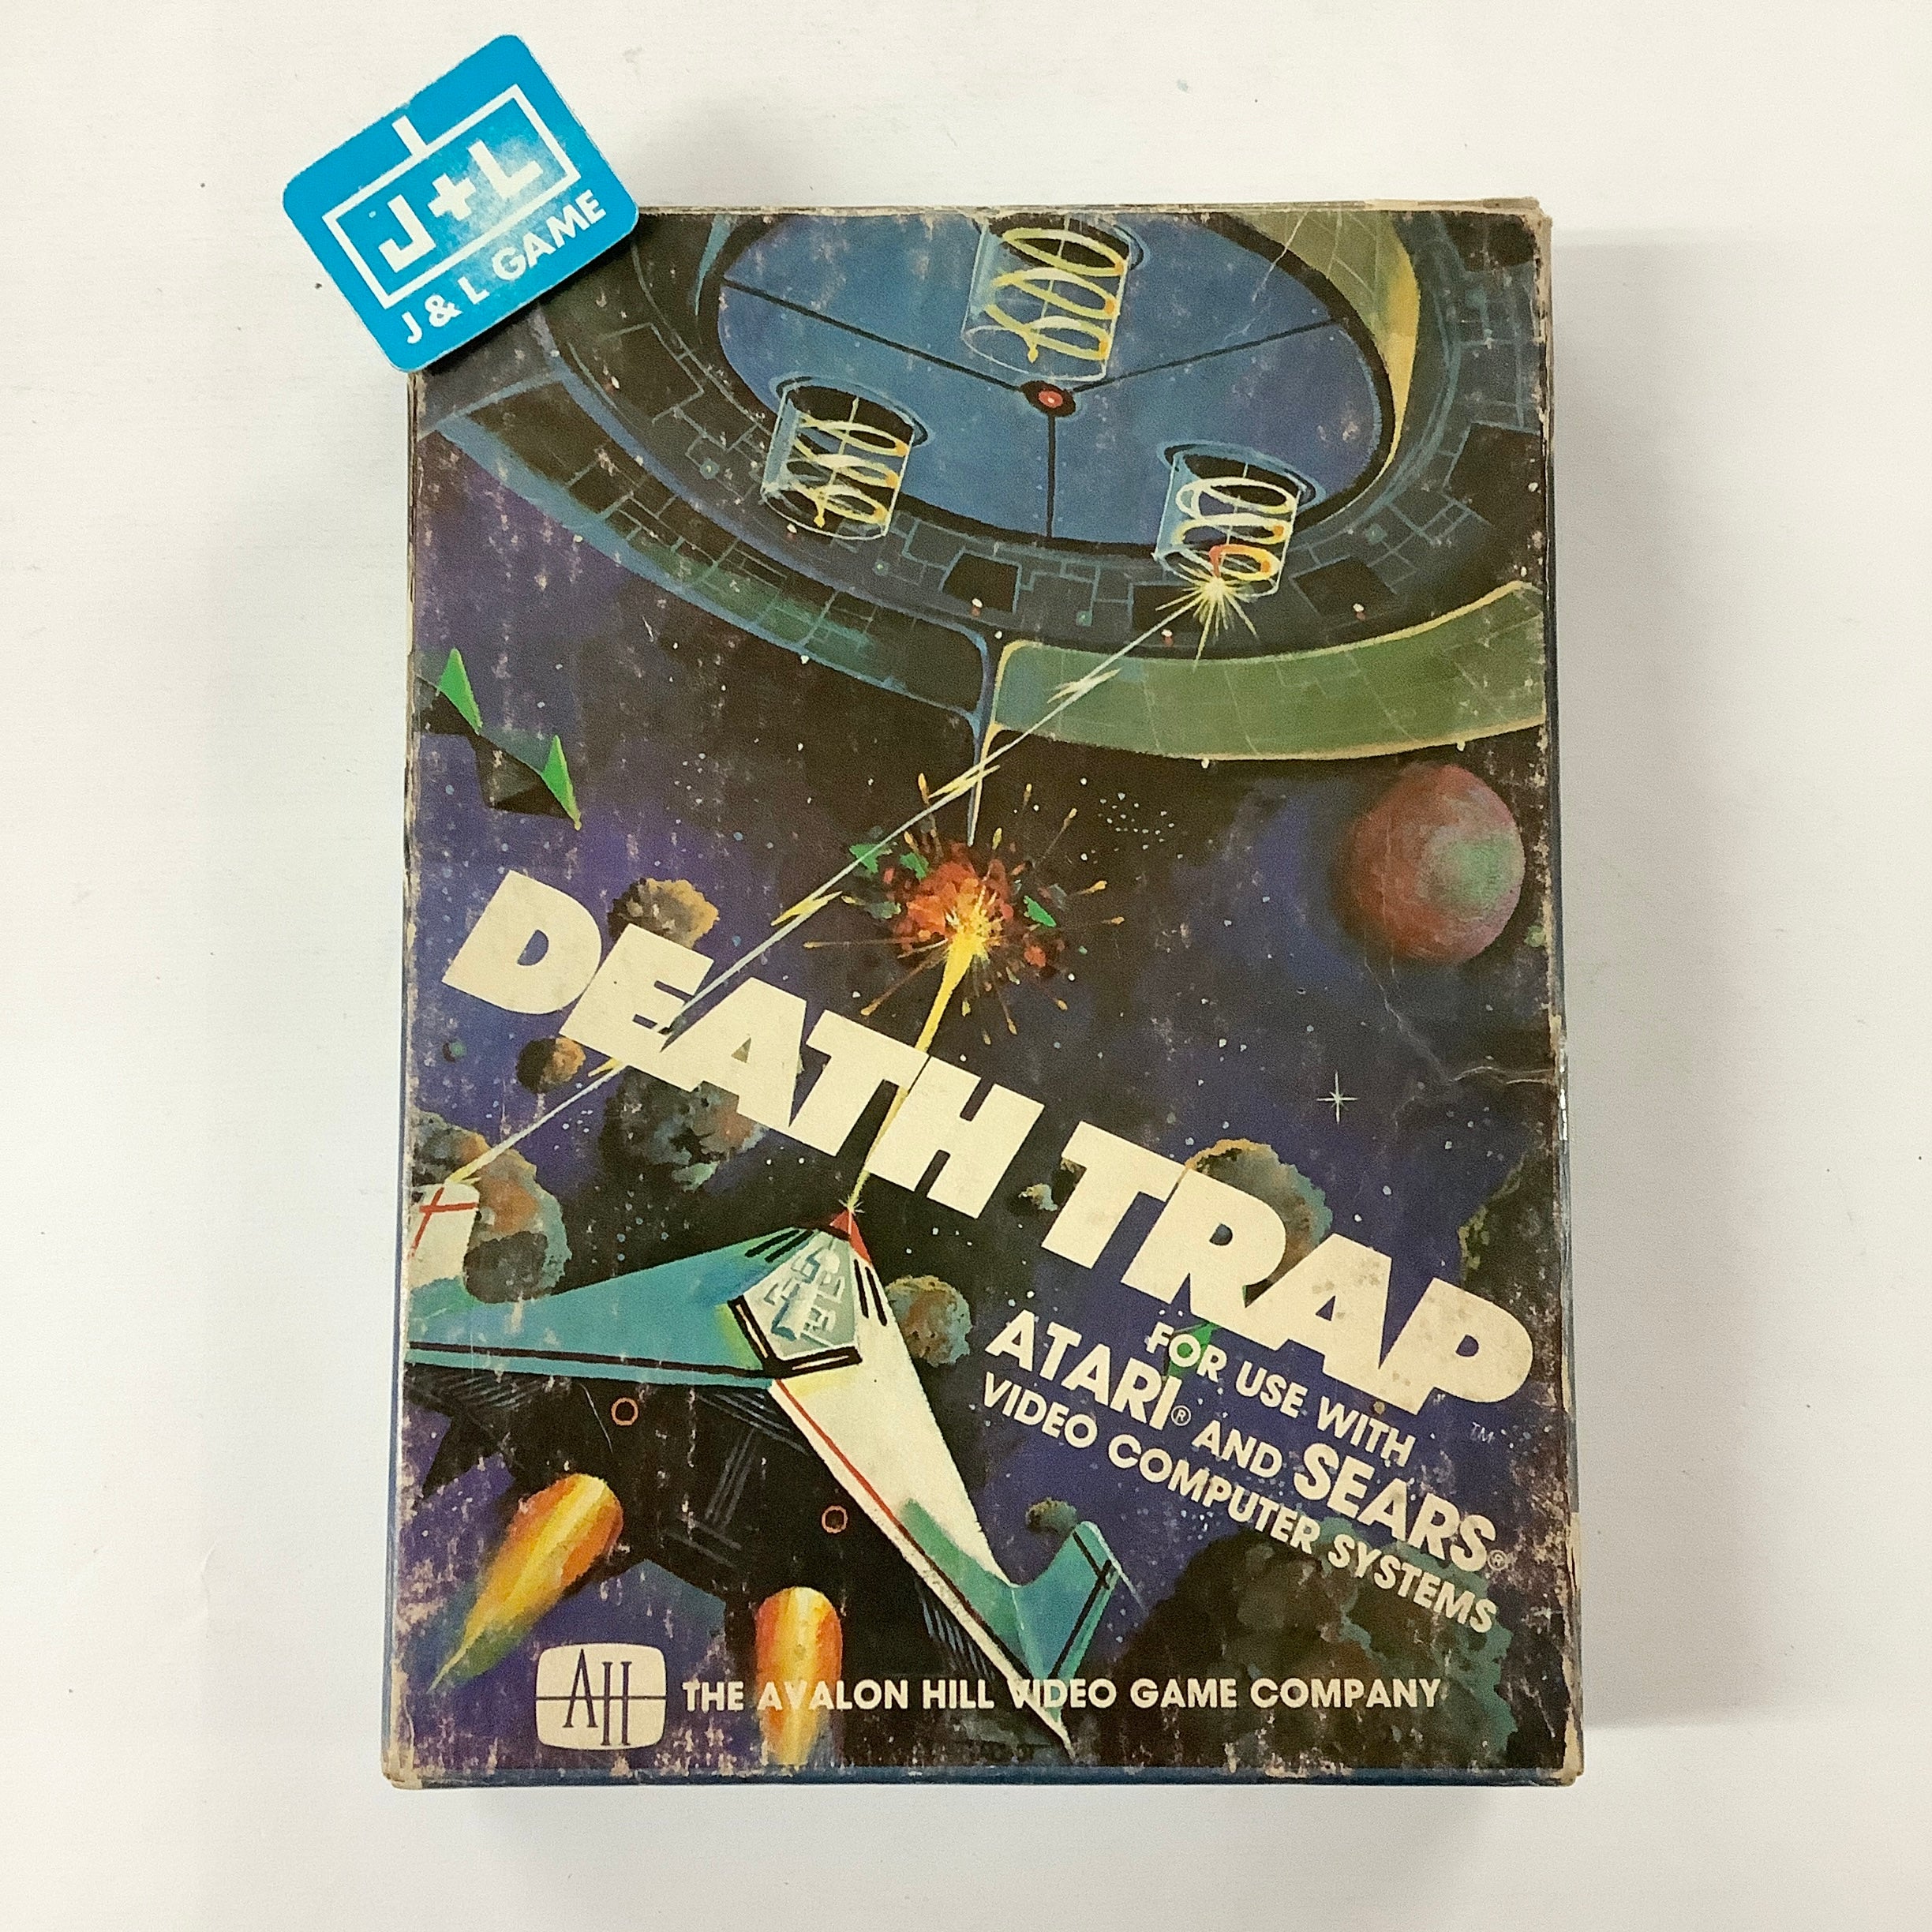 Death Trap - Atari 2600 [Pre-Owned] Video Games Atari   